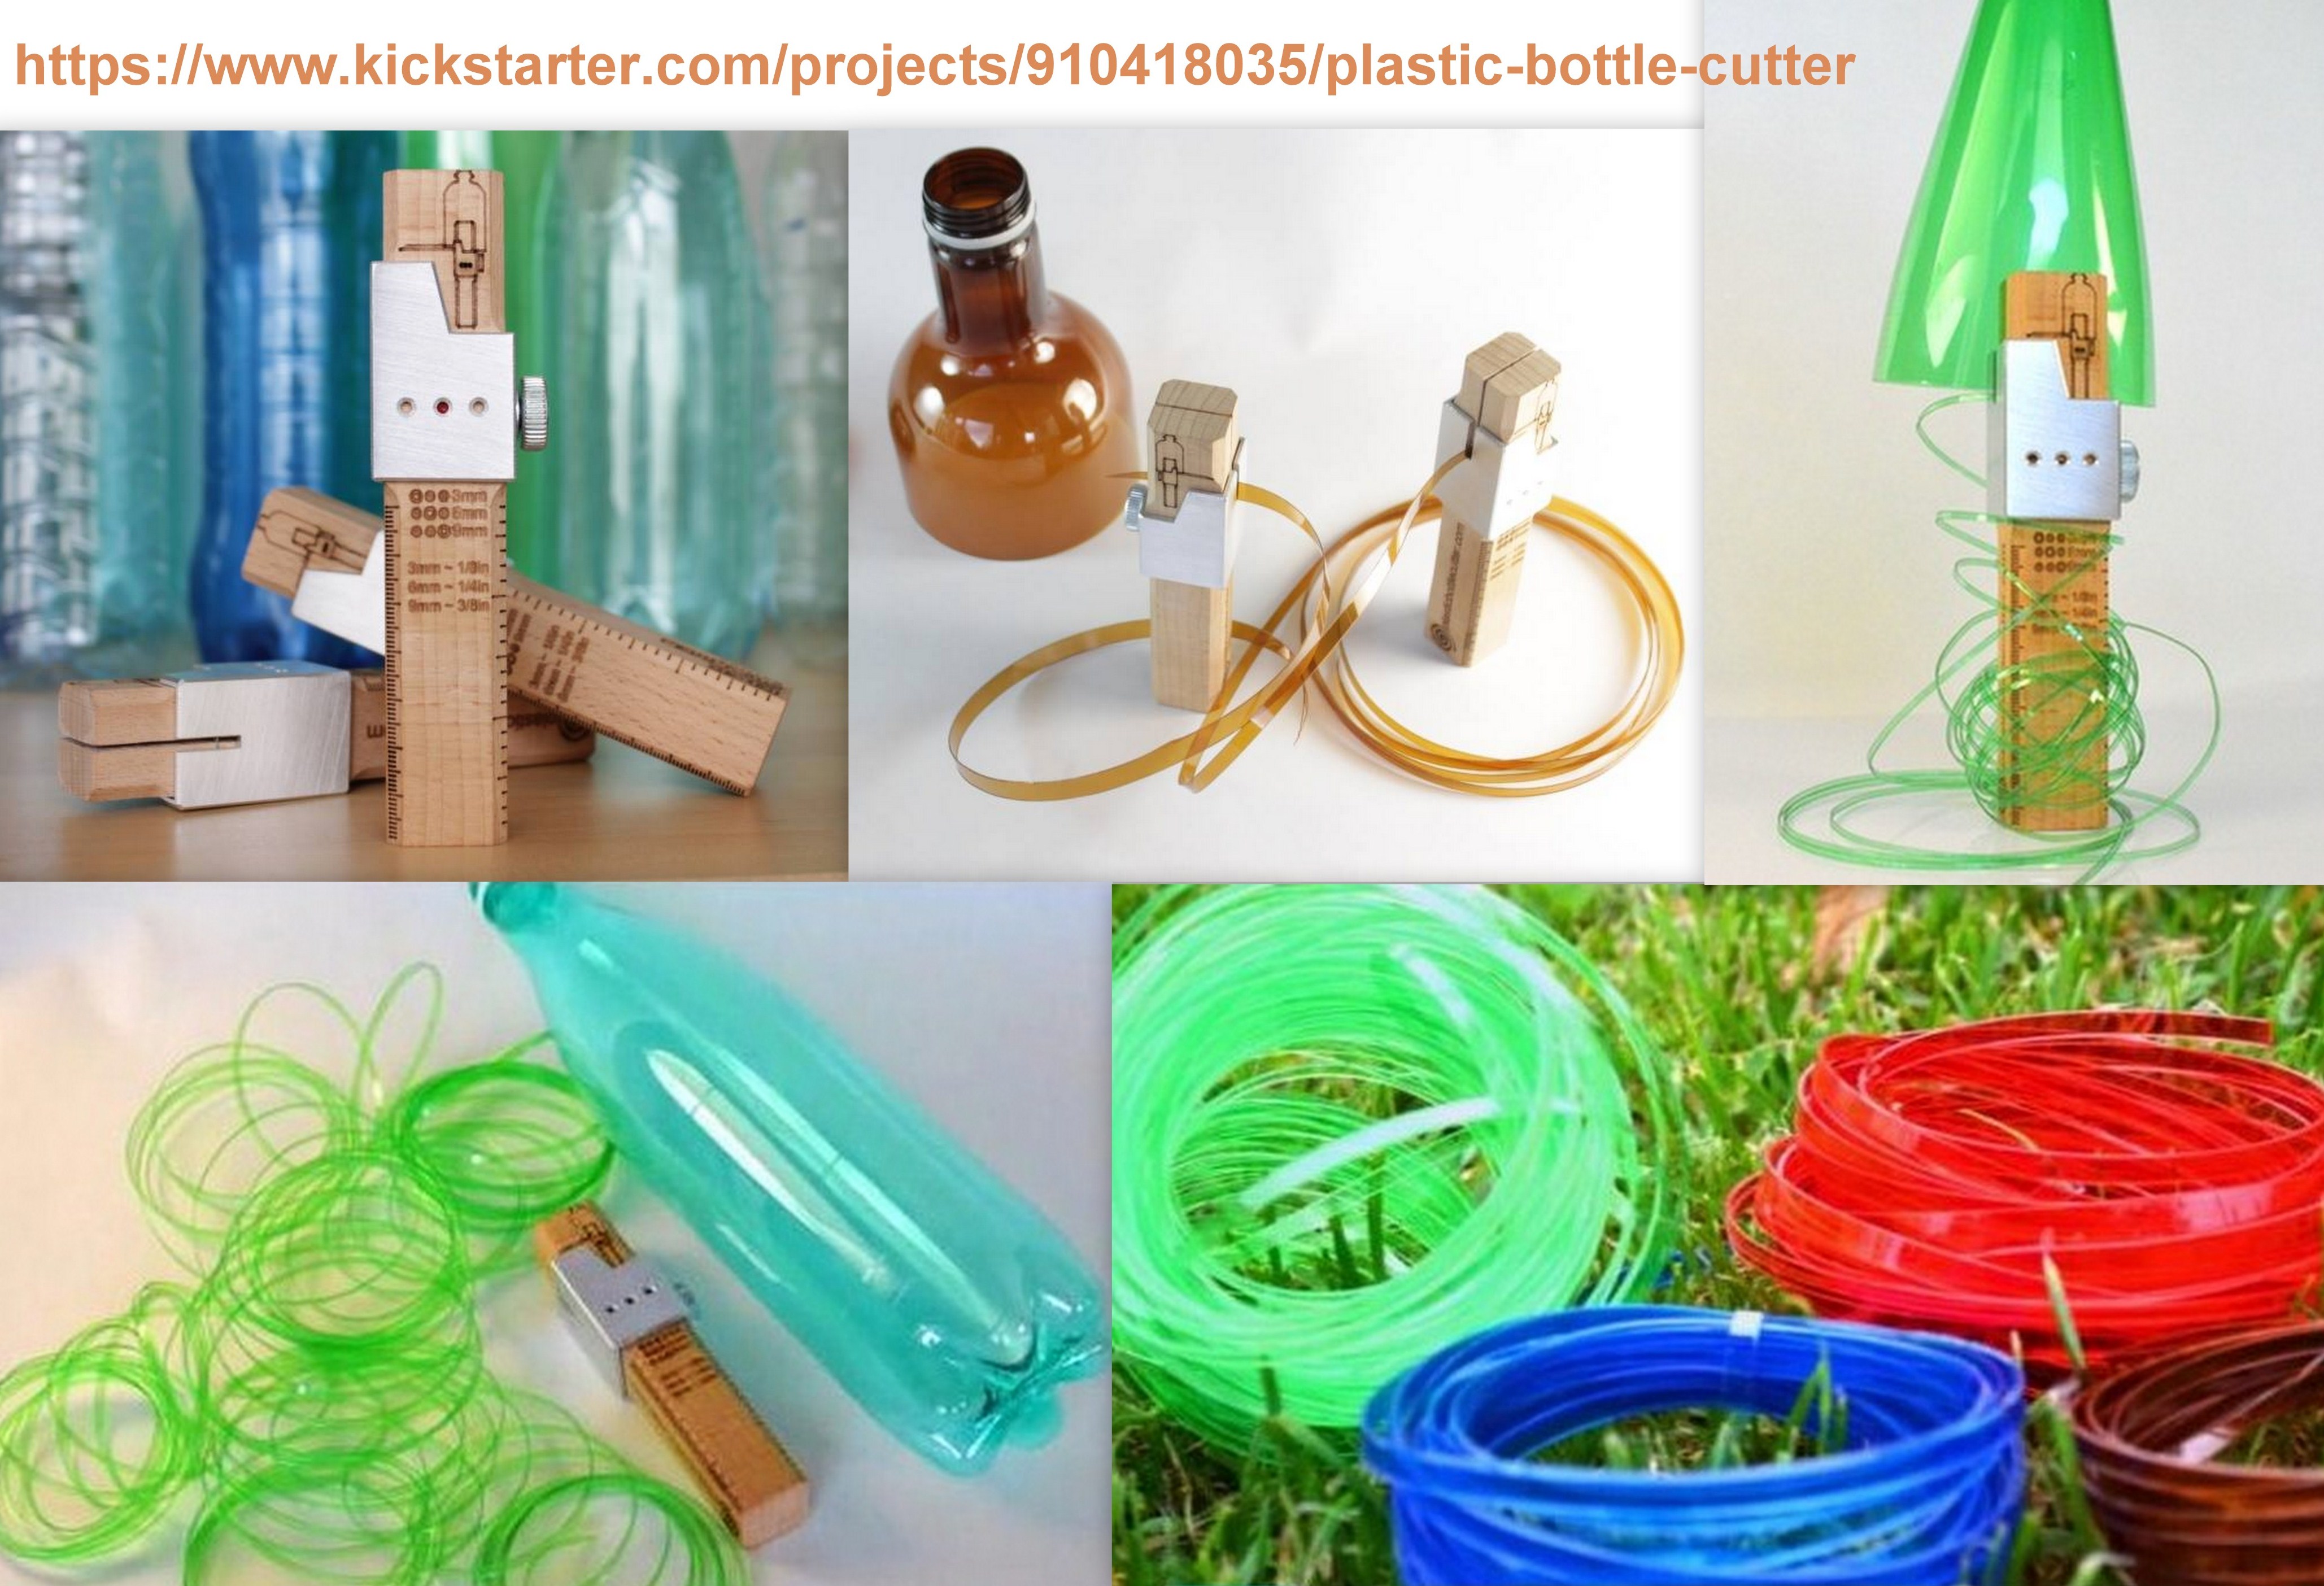 Le cutter qui transforme les bouteilles plastique en ficelle